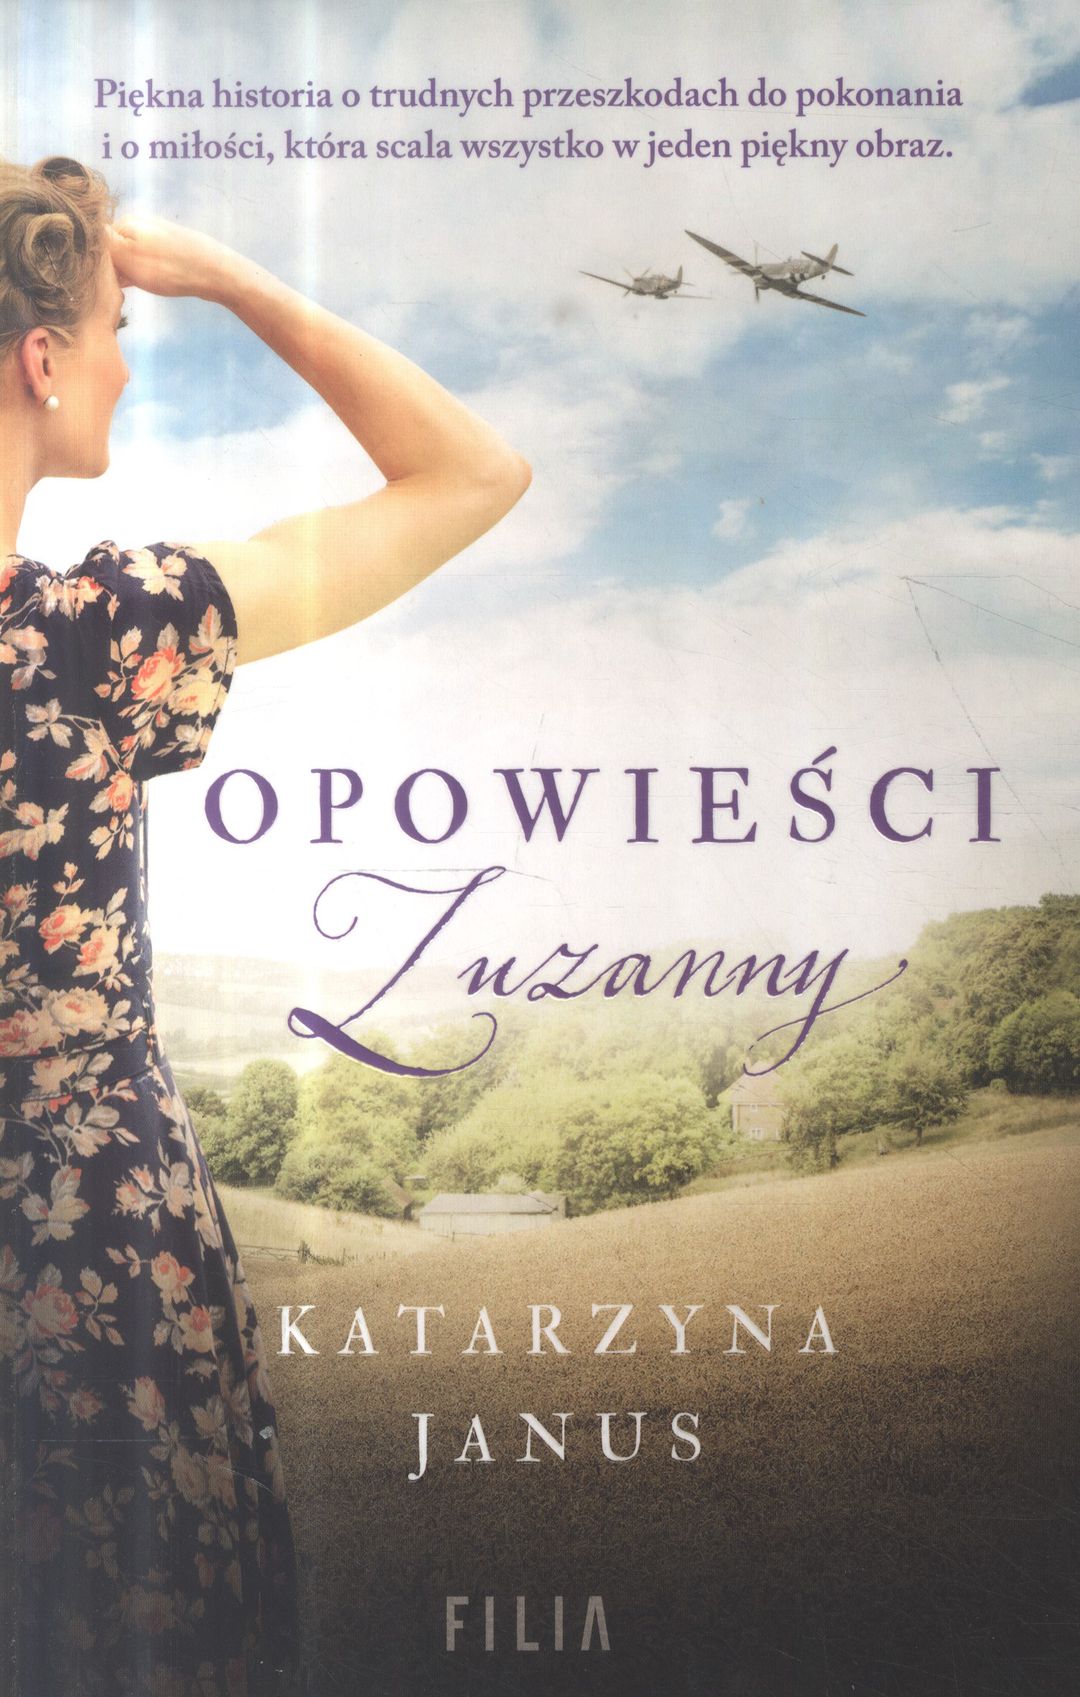 Janus Katarzyna - Opowieści Zuzanny